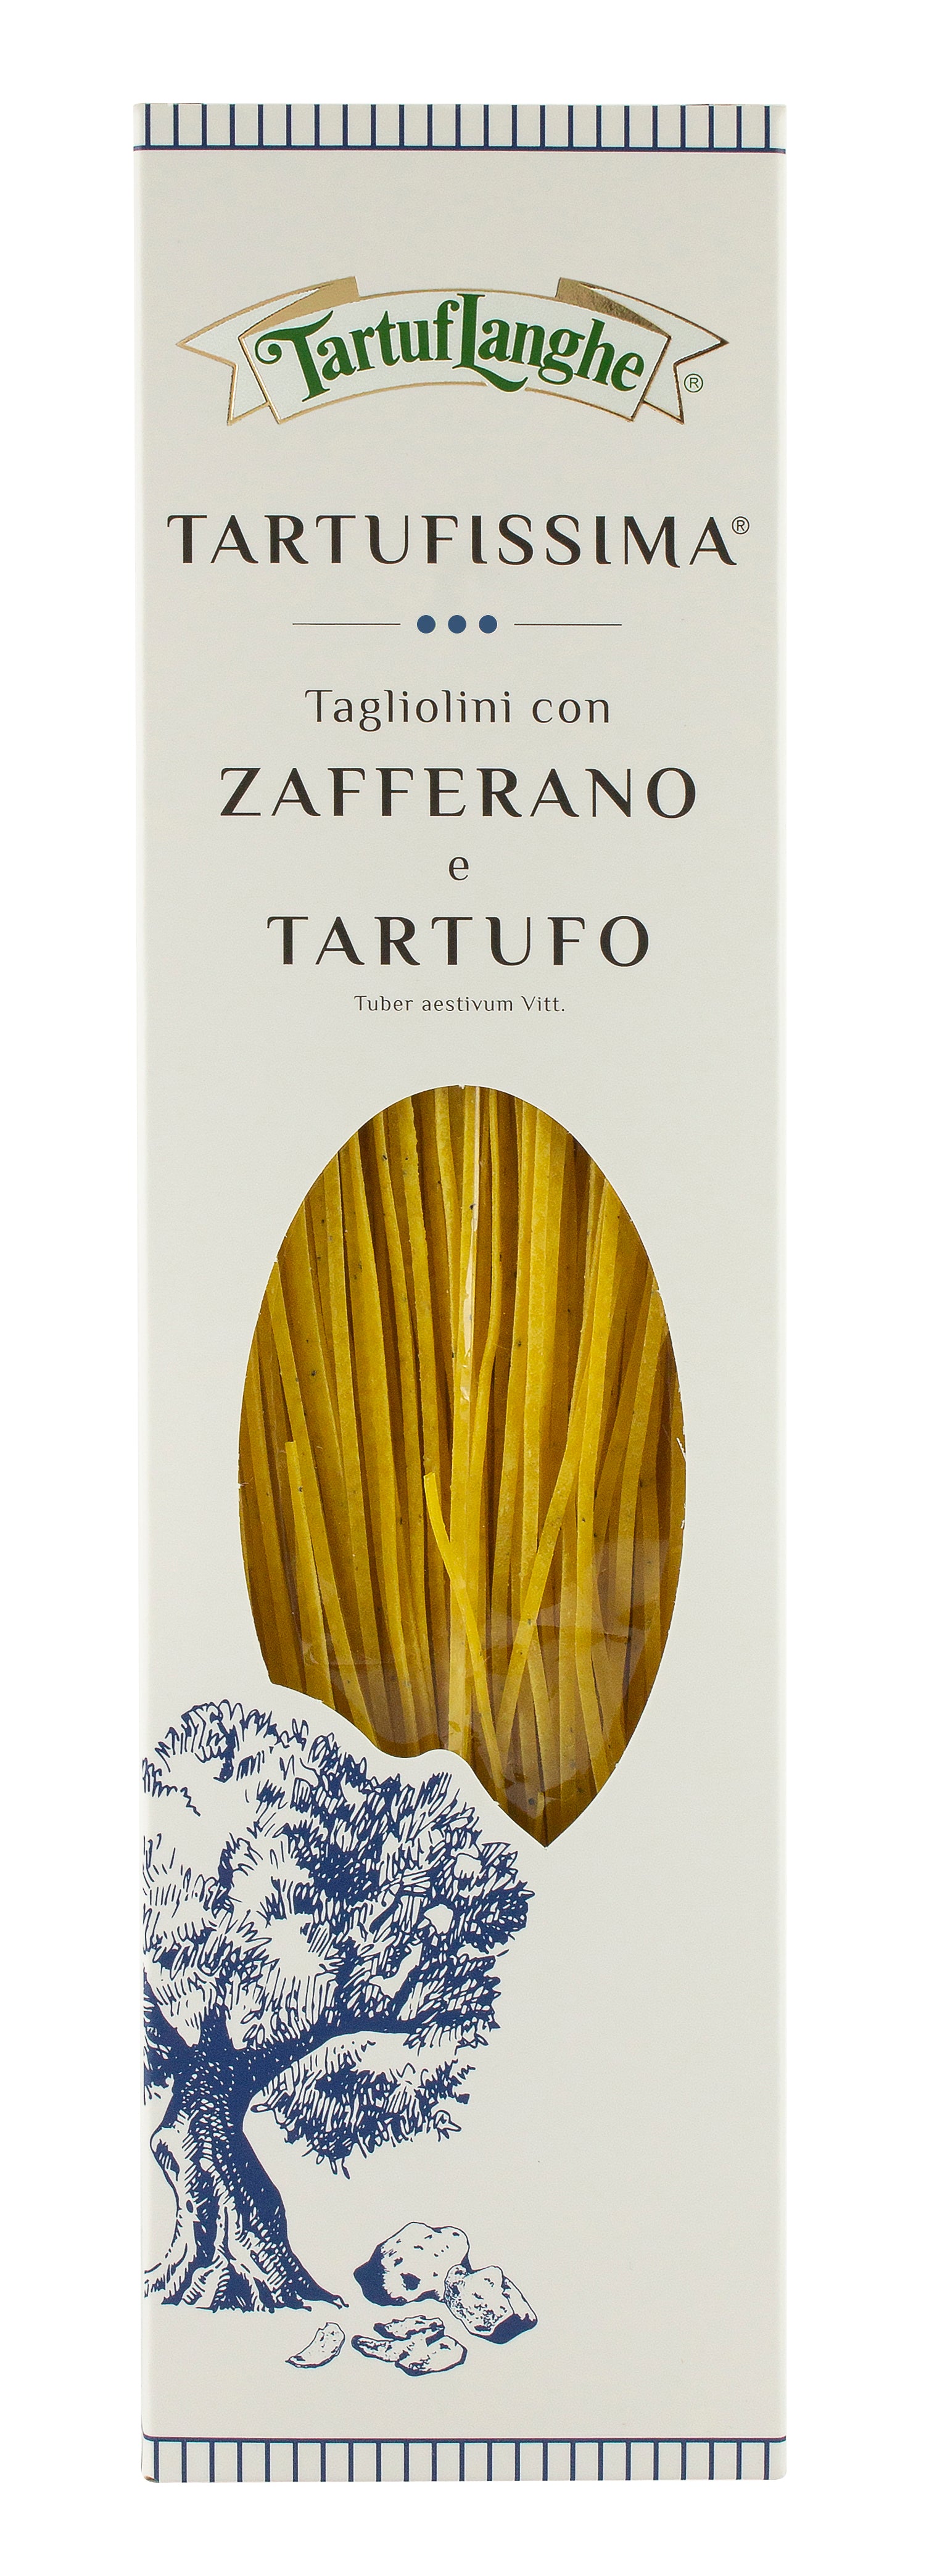 Tartuflanghe Tagliolini Egg Pasta with Truffle and Saffron